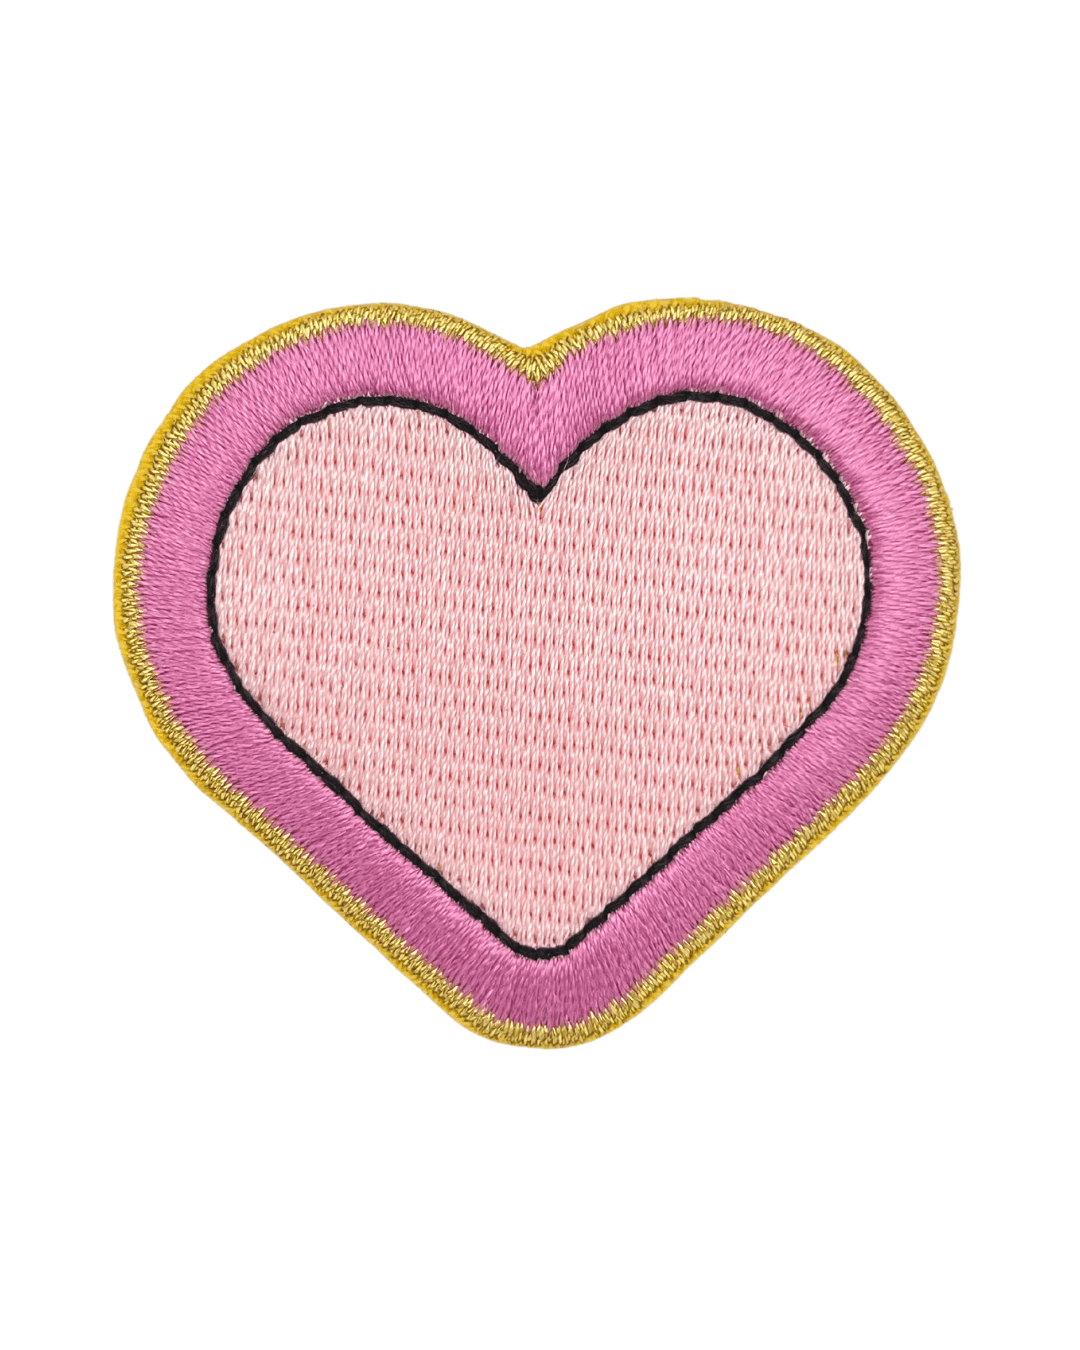 Pink Heart Sticker Patch - American Deadstock